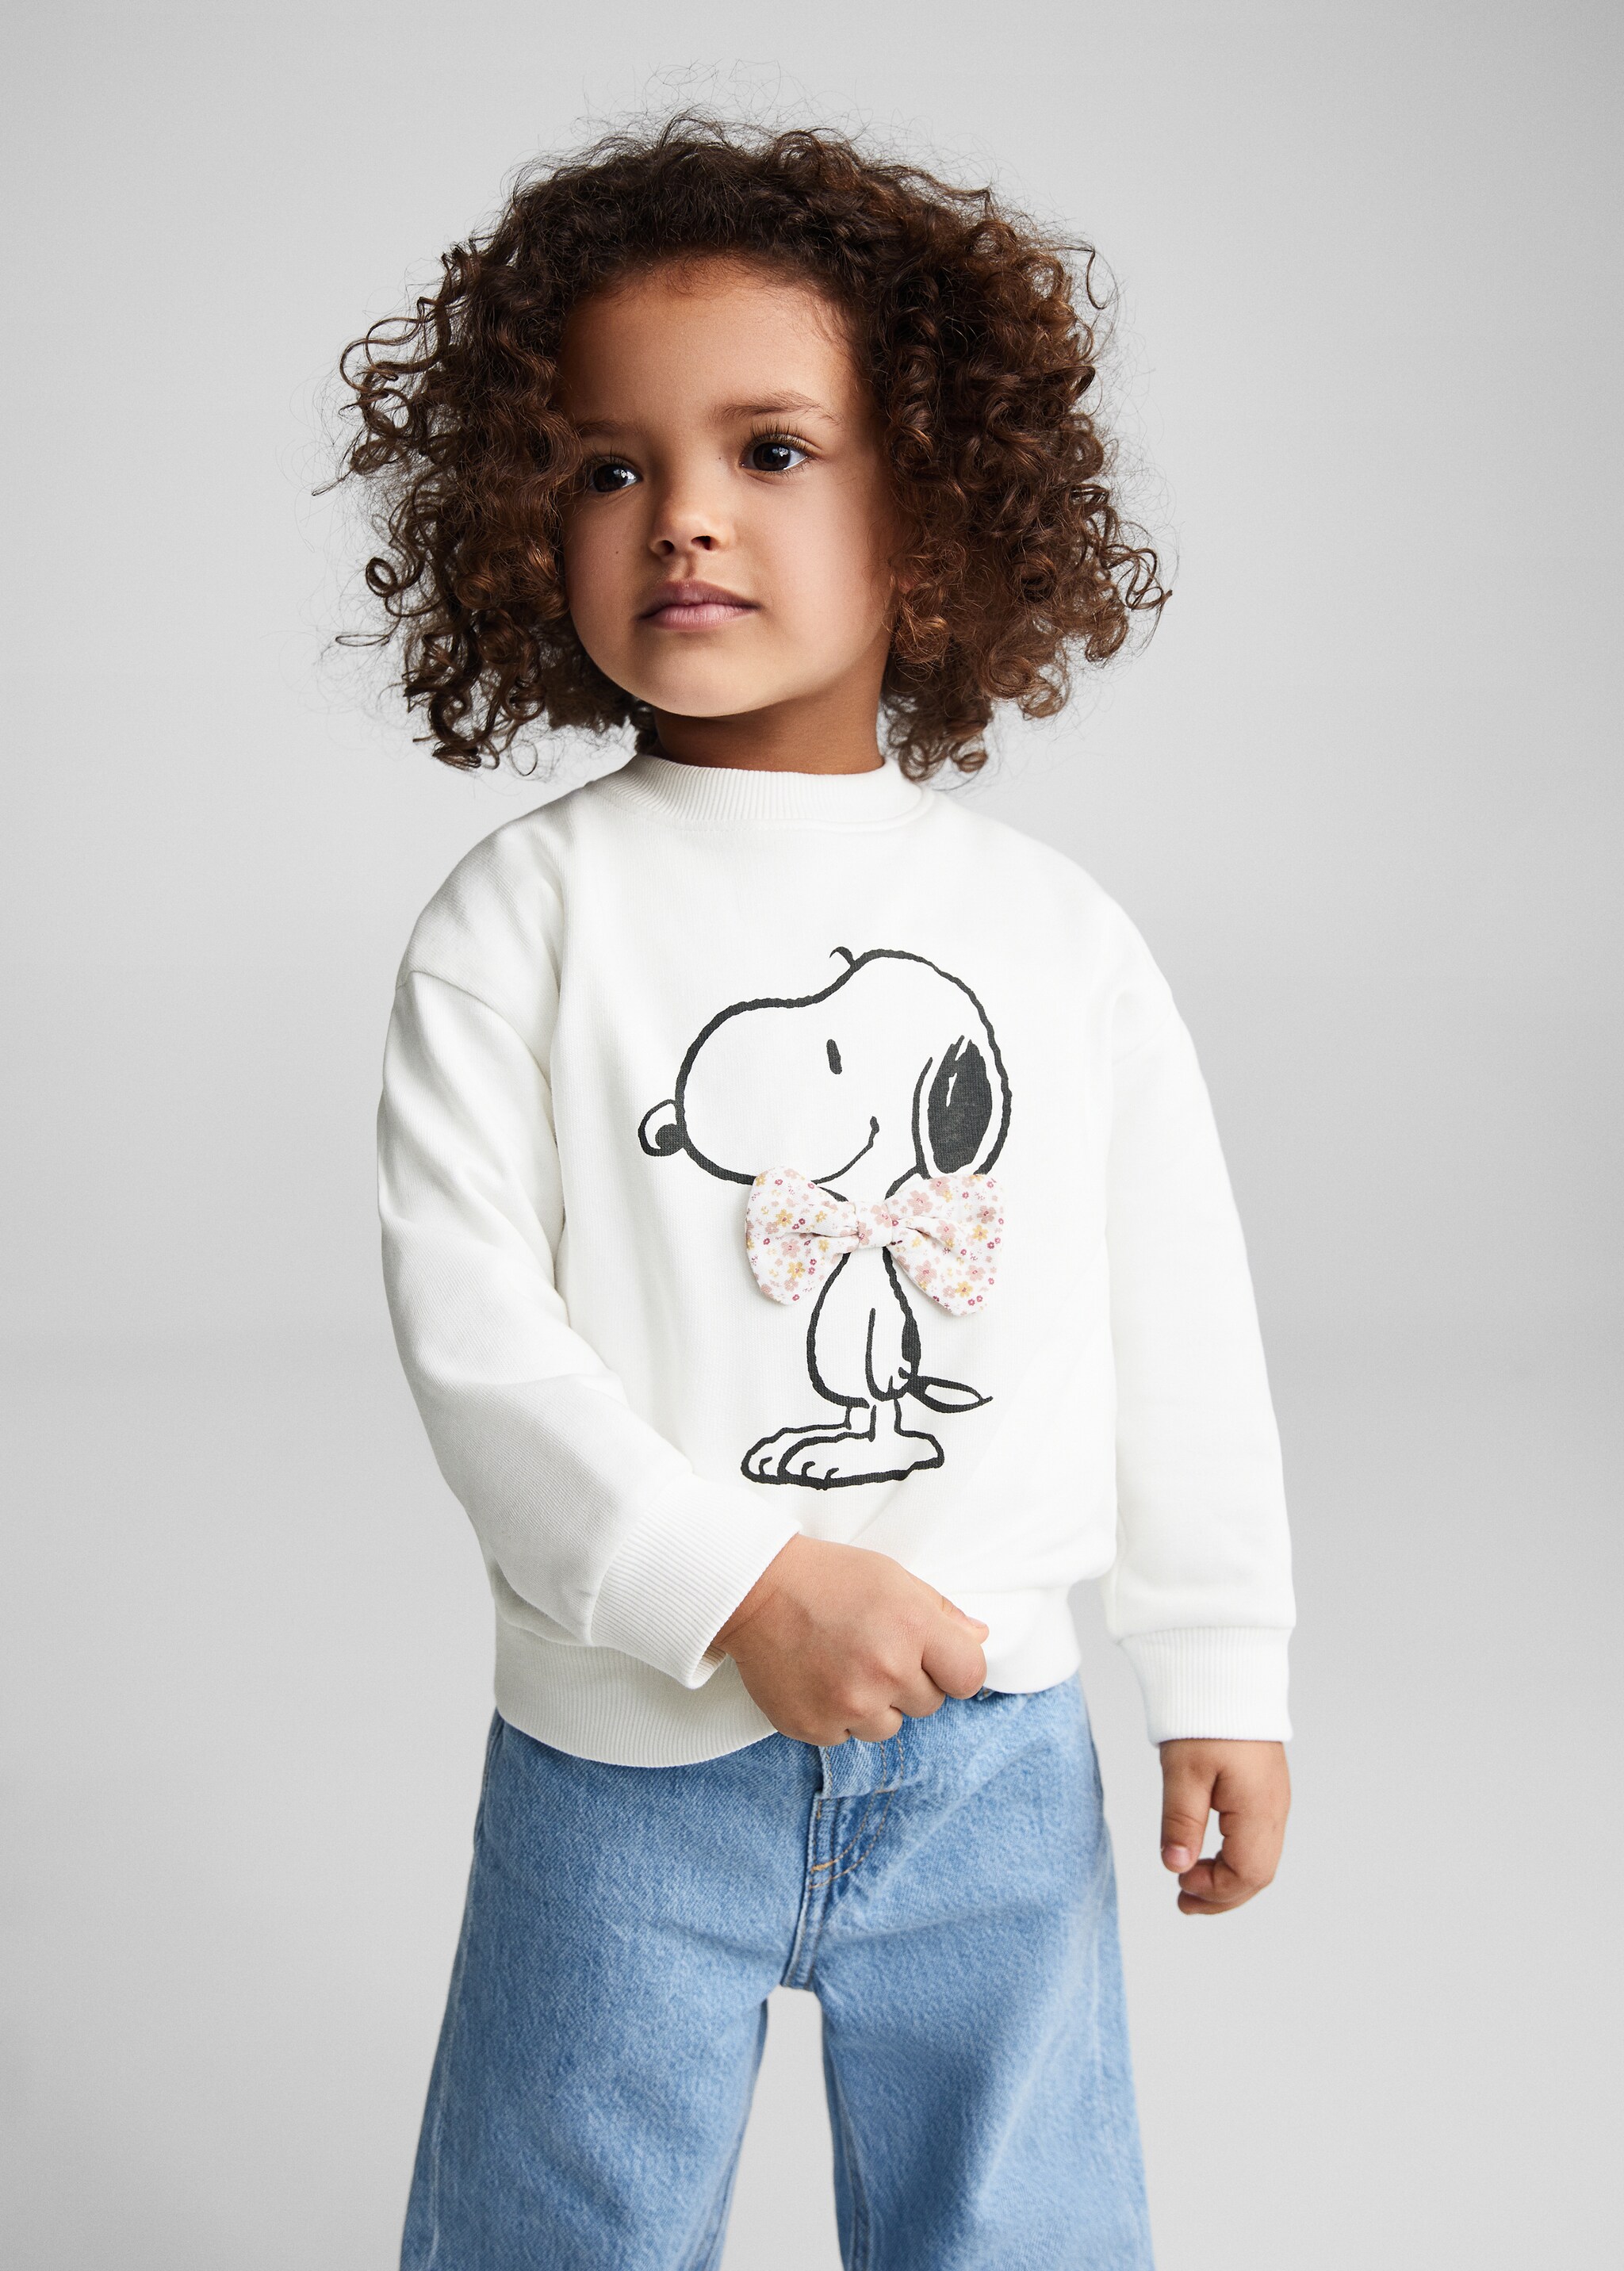 Sweatshirt de algodão do Snoopy - Plano médio